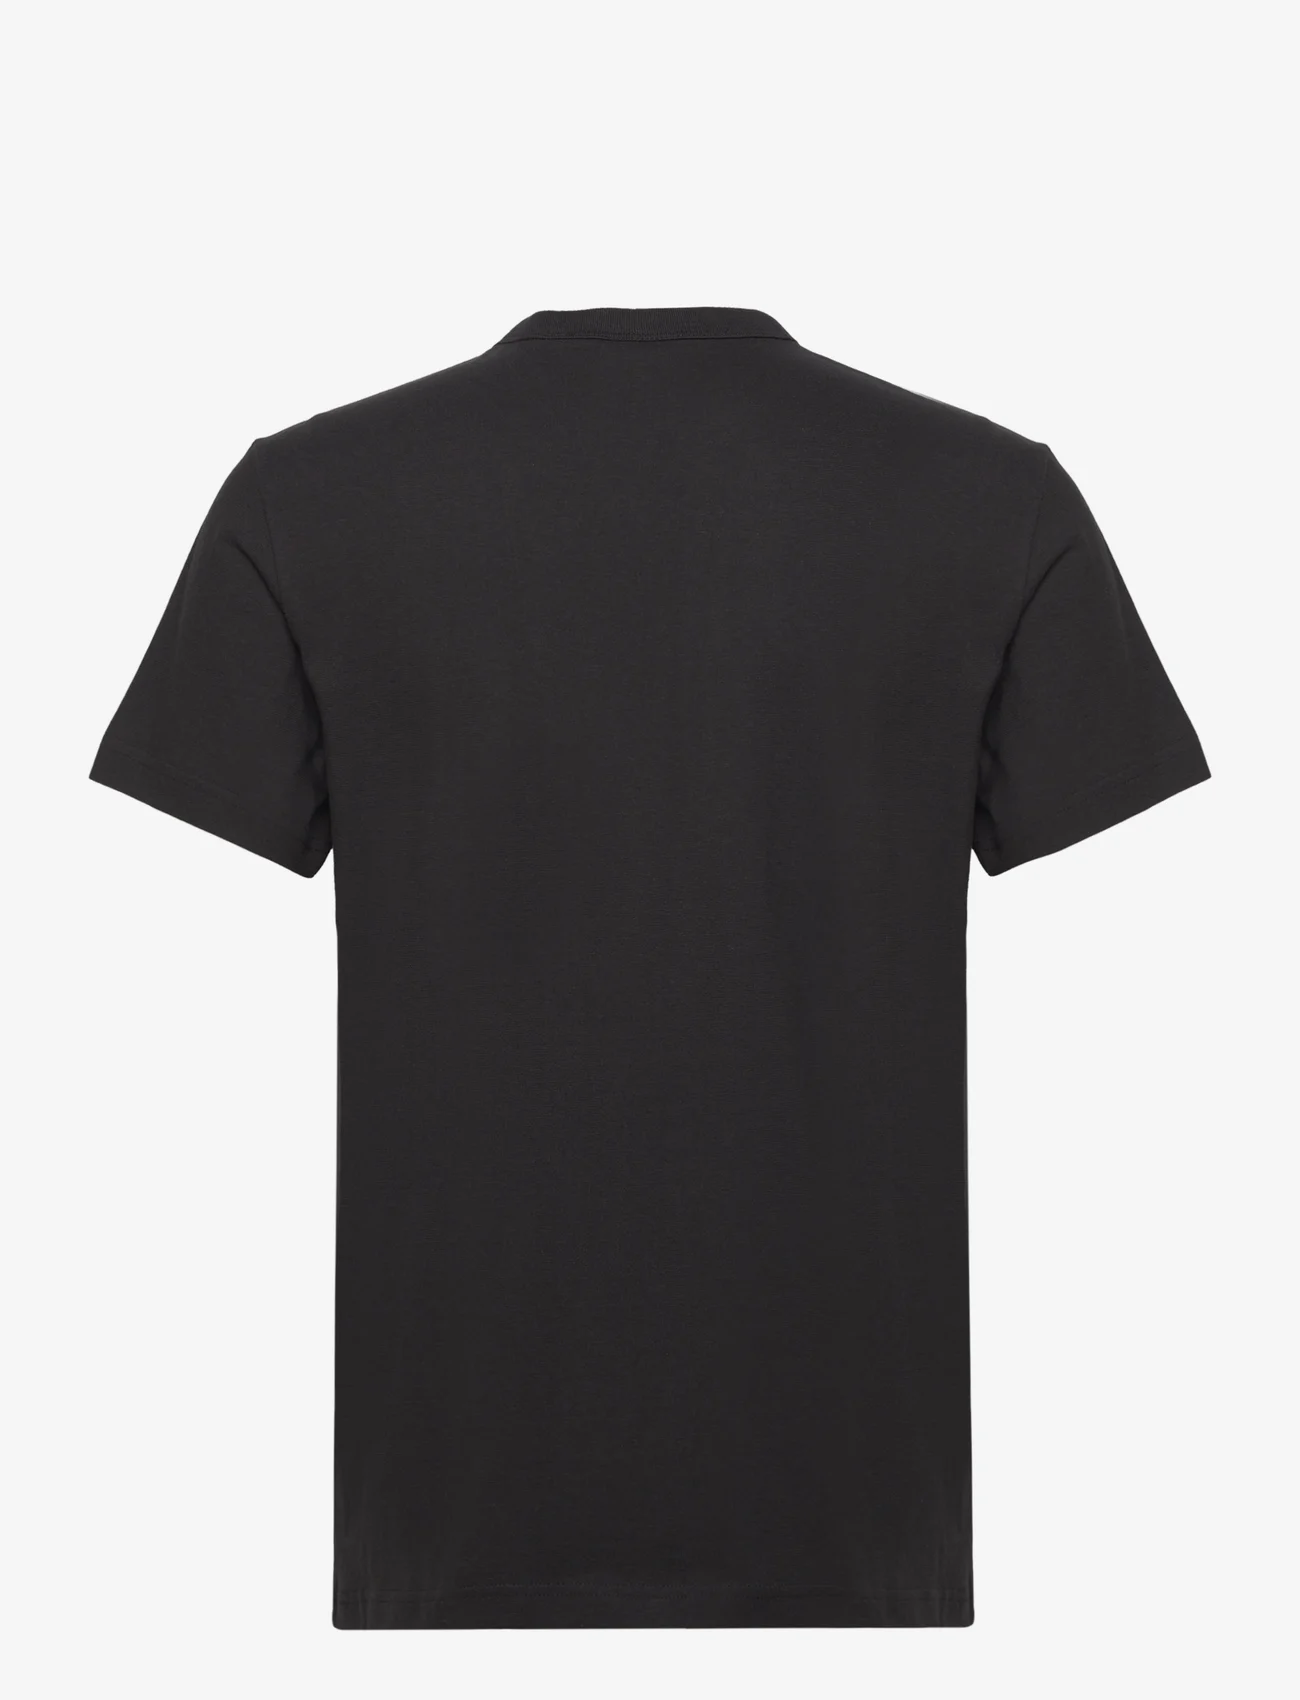 G-Star RAW - Collegic r t - kortärmade t-shirts - dk black - 1